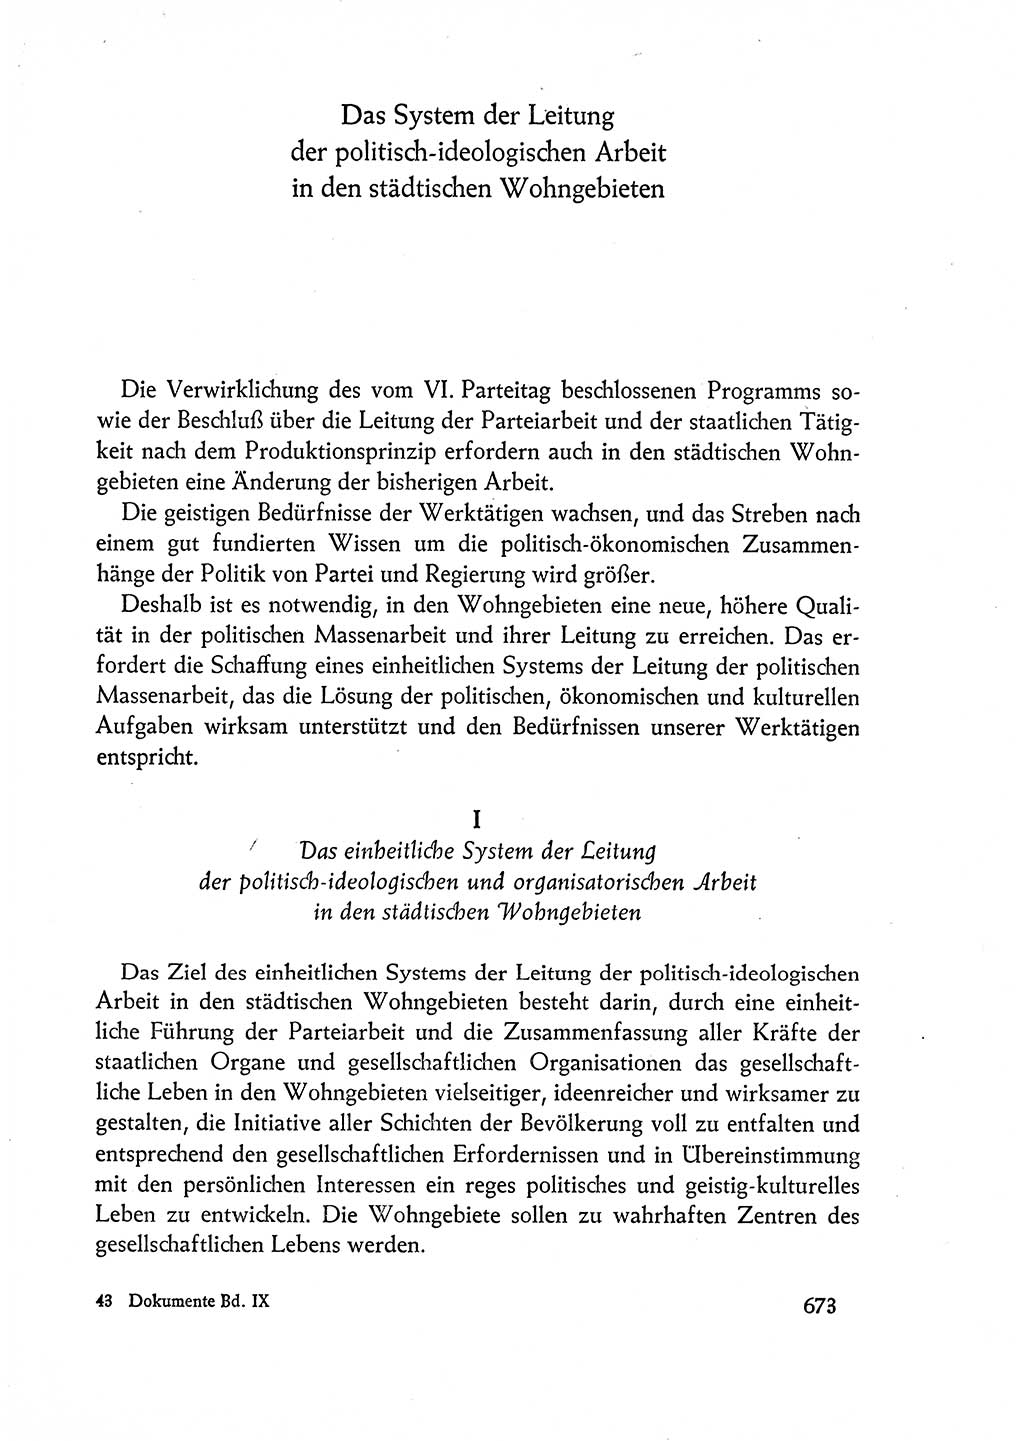 Dokumente der Sozialistischen Einheitspartei Deutschlands (SED) [Deutsche Demokratische Republik (DDR)] 1962-1963, Seite 673 (Dok. SED DDR 1962-1963, S. 673)